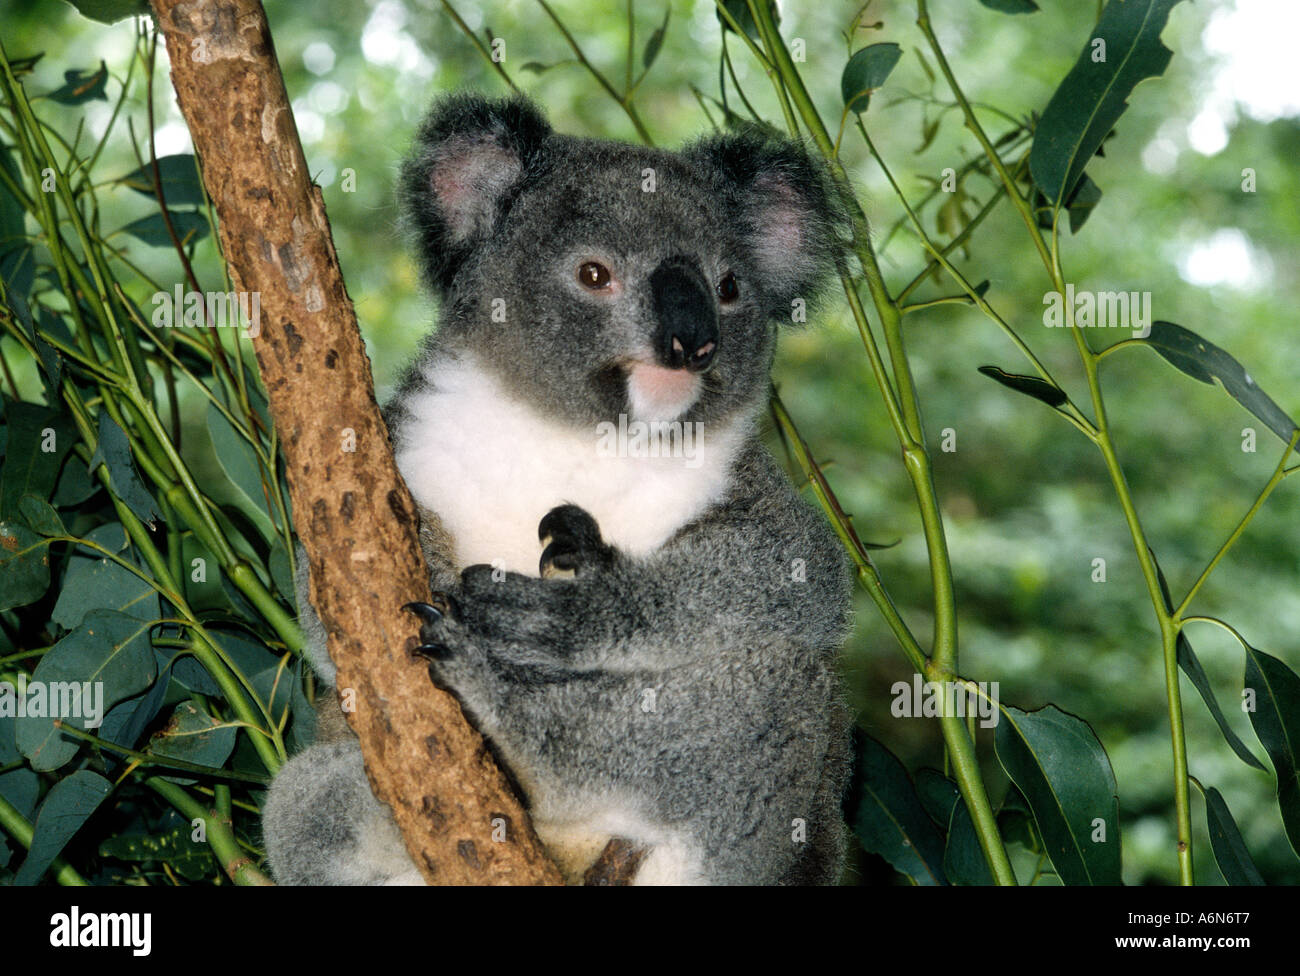 Koala Bear in eucalyptus tree at zoo near Sydney Australia Stock Photo